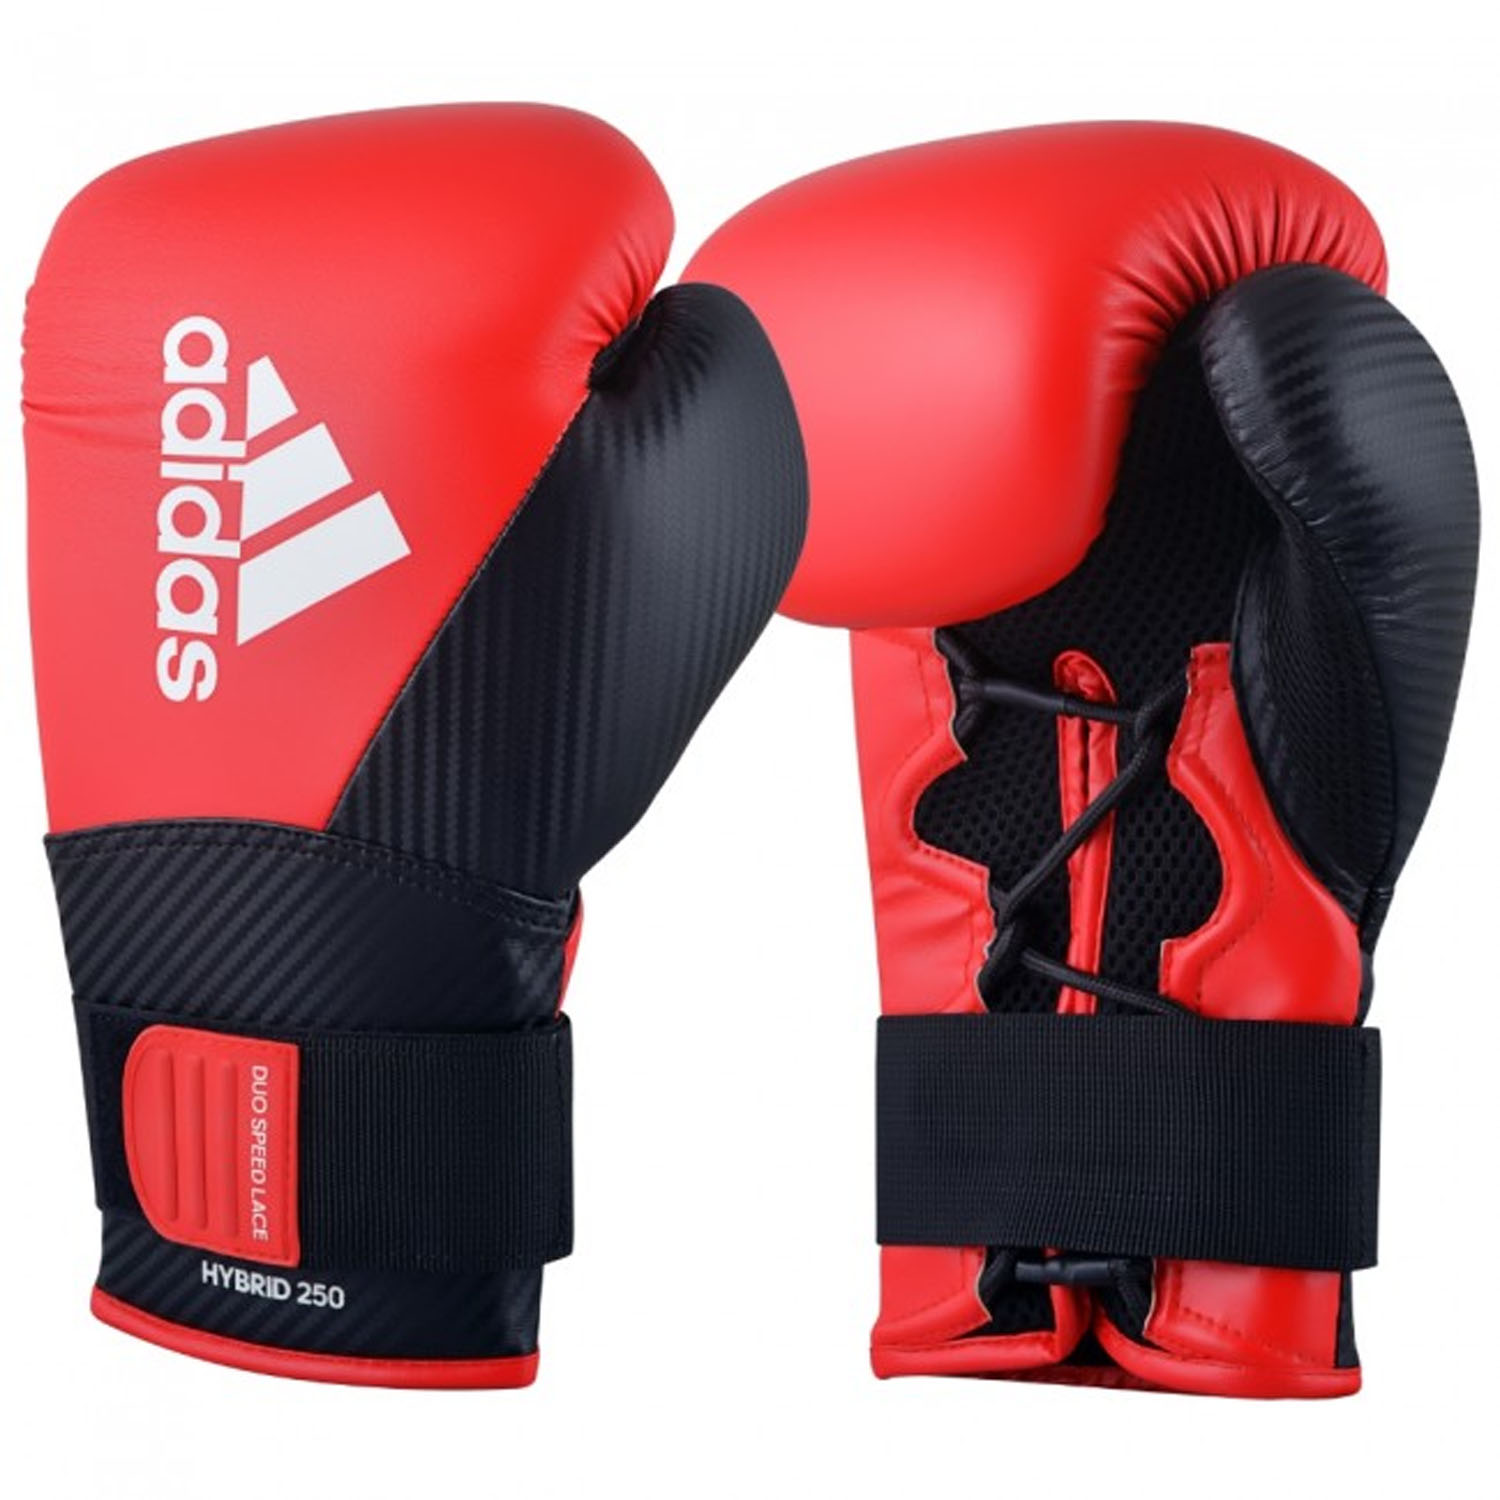 adidas Boxhandschuhe, Hybrid 250, rot-schwarz